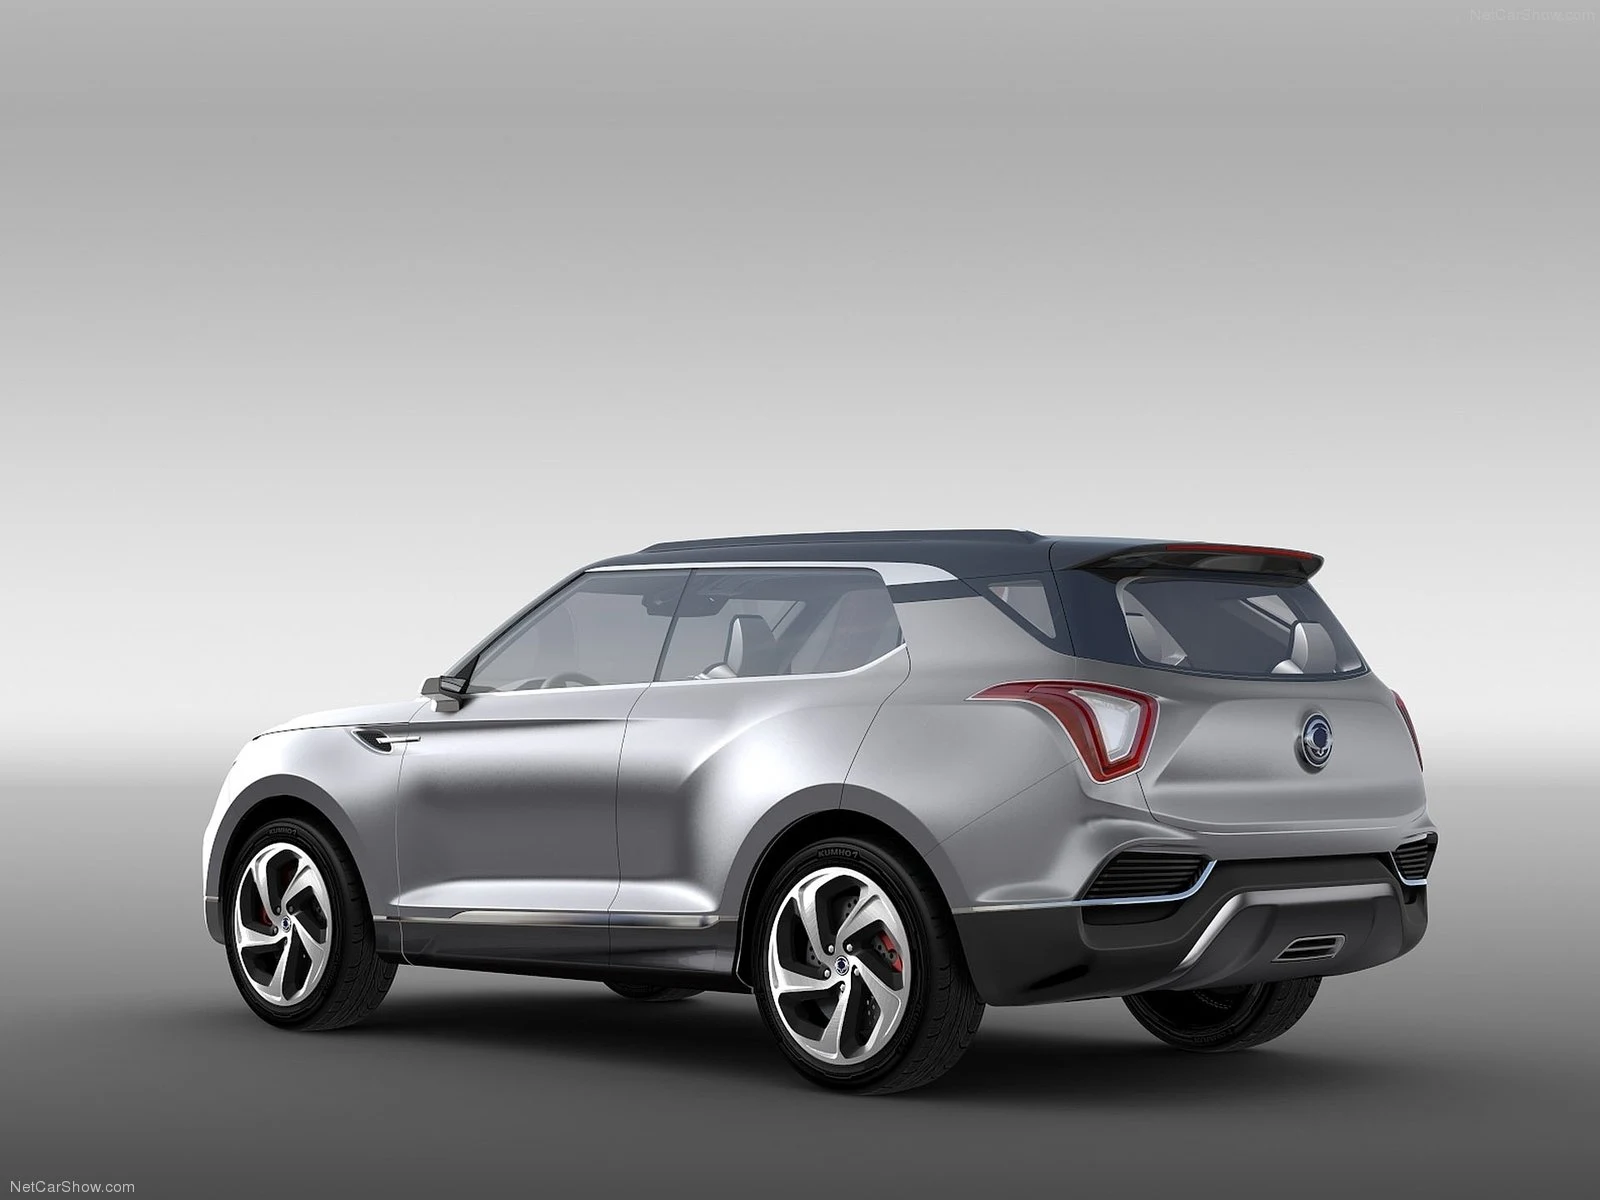 Hình ảnh xe ô tô SsangYong XLV Concept 2014 & nội ngoại thất